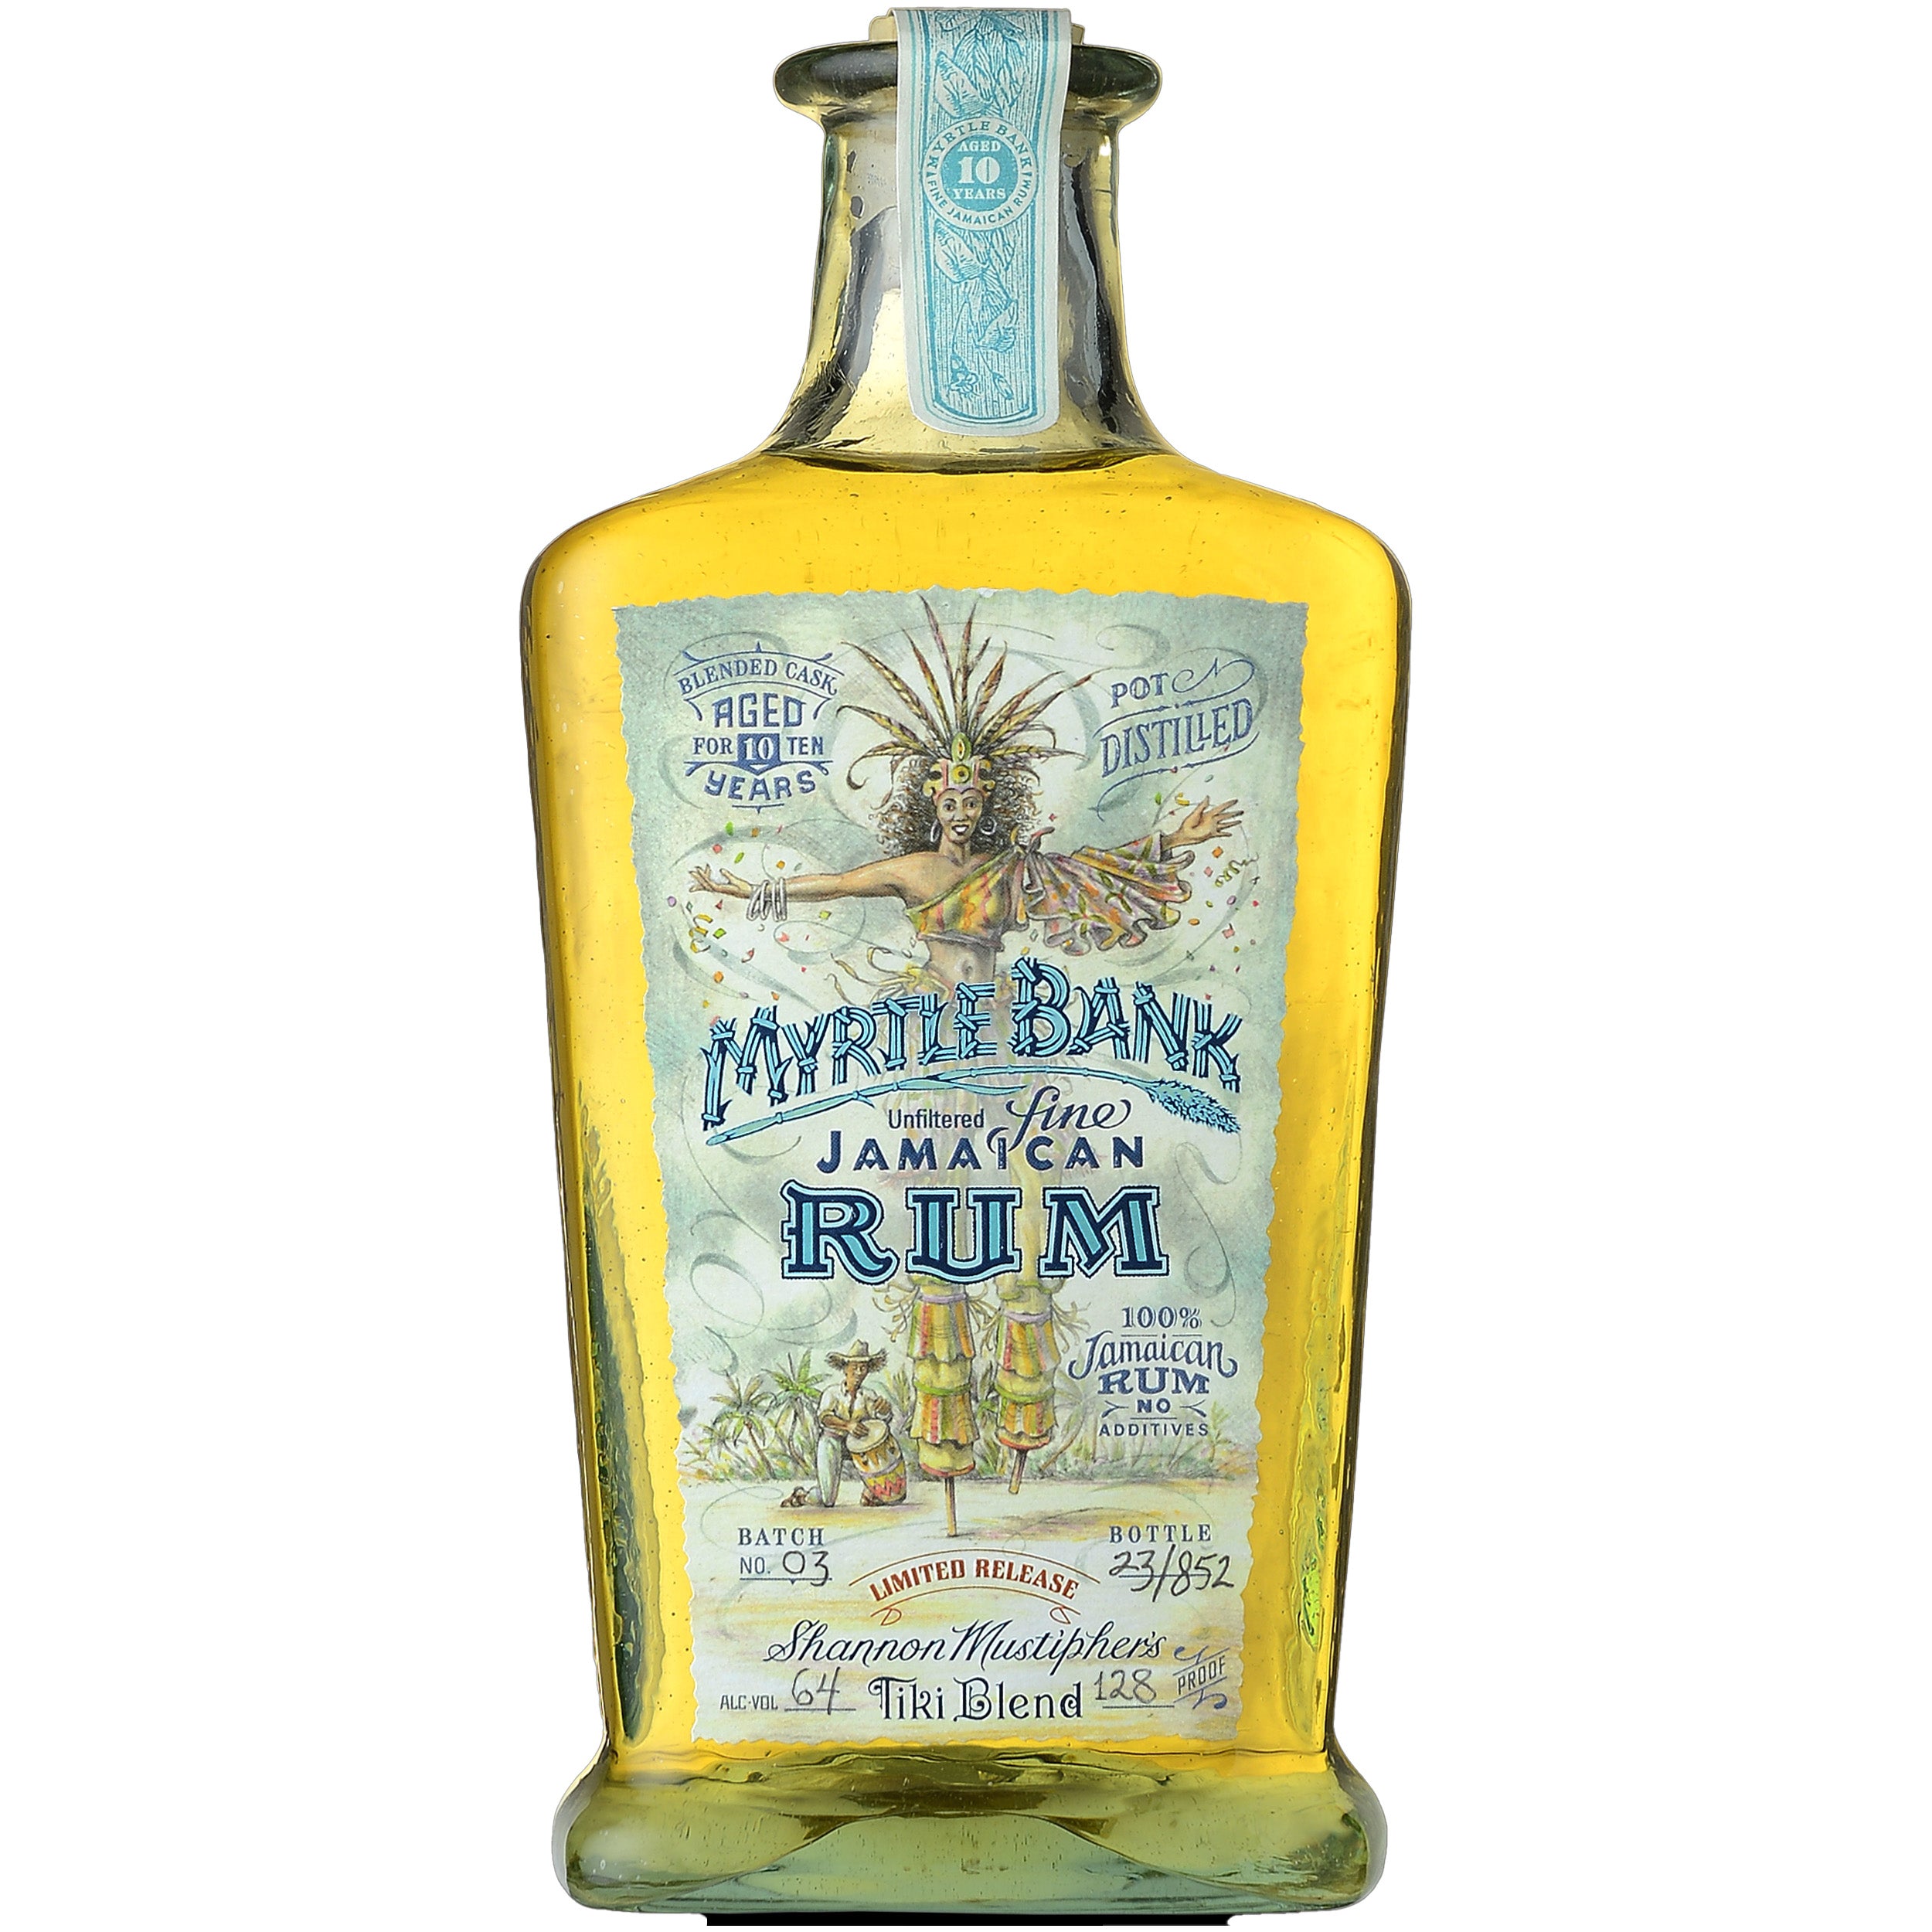 Myrtle Bank 10 Year Shannon Mus's Tiki Blend Rum